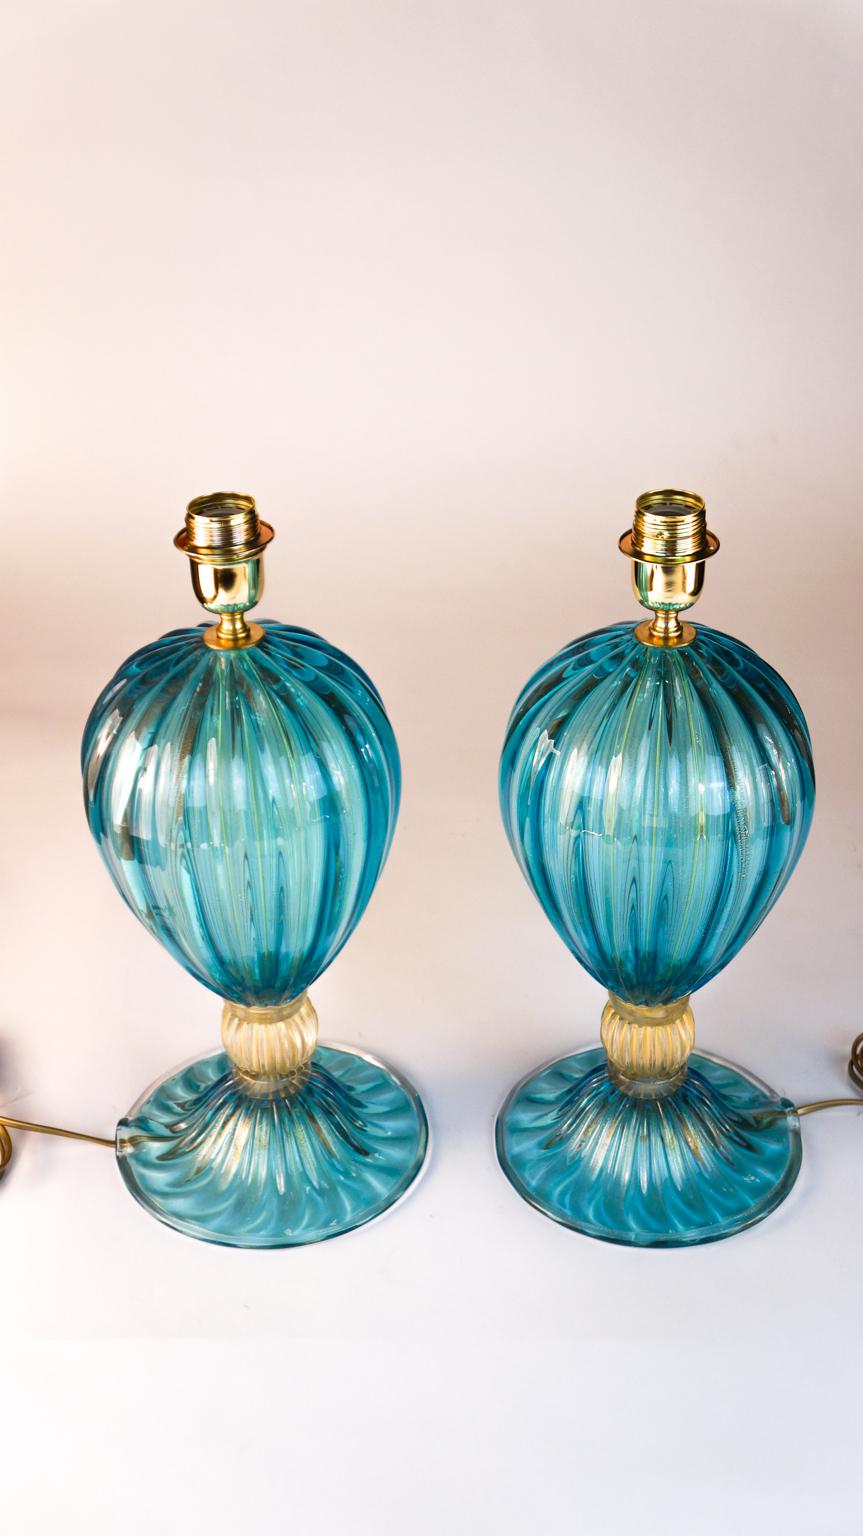 Paire exclusive de lampes de table en verre de Murano de couleur aigue-marine avec détails en feuille d'or 24 carats.
En touchant les lampes, vous pouvez entendre les différents sillons réalisés spécialement par le traitement 